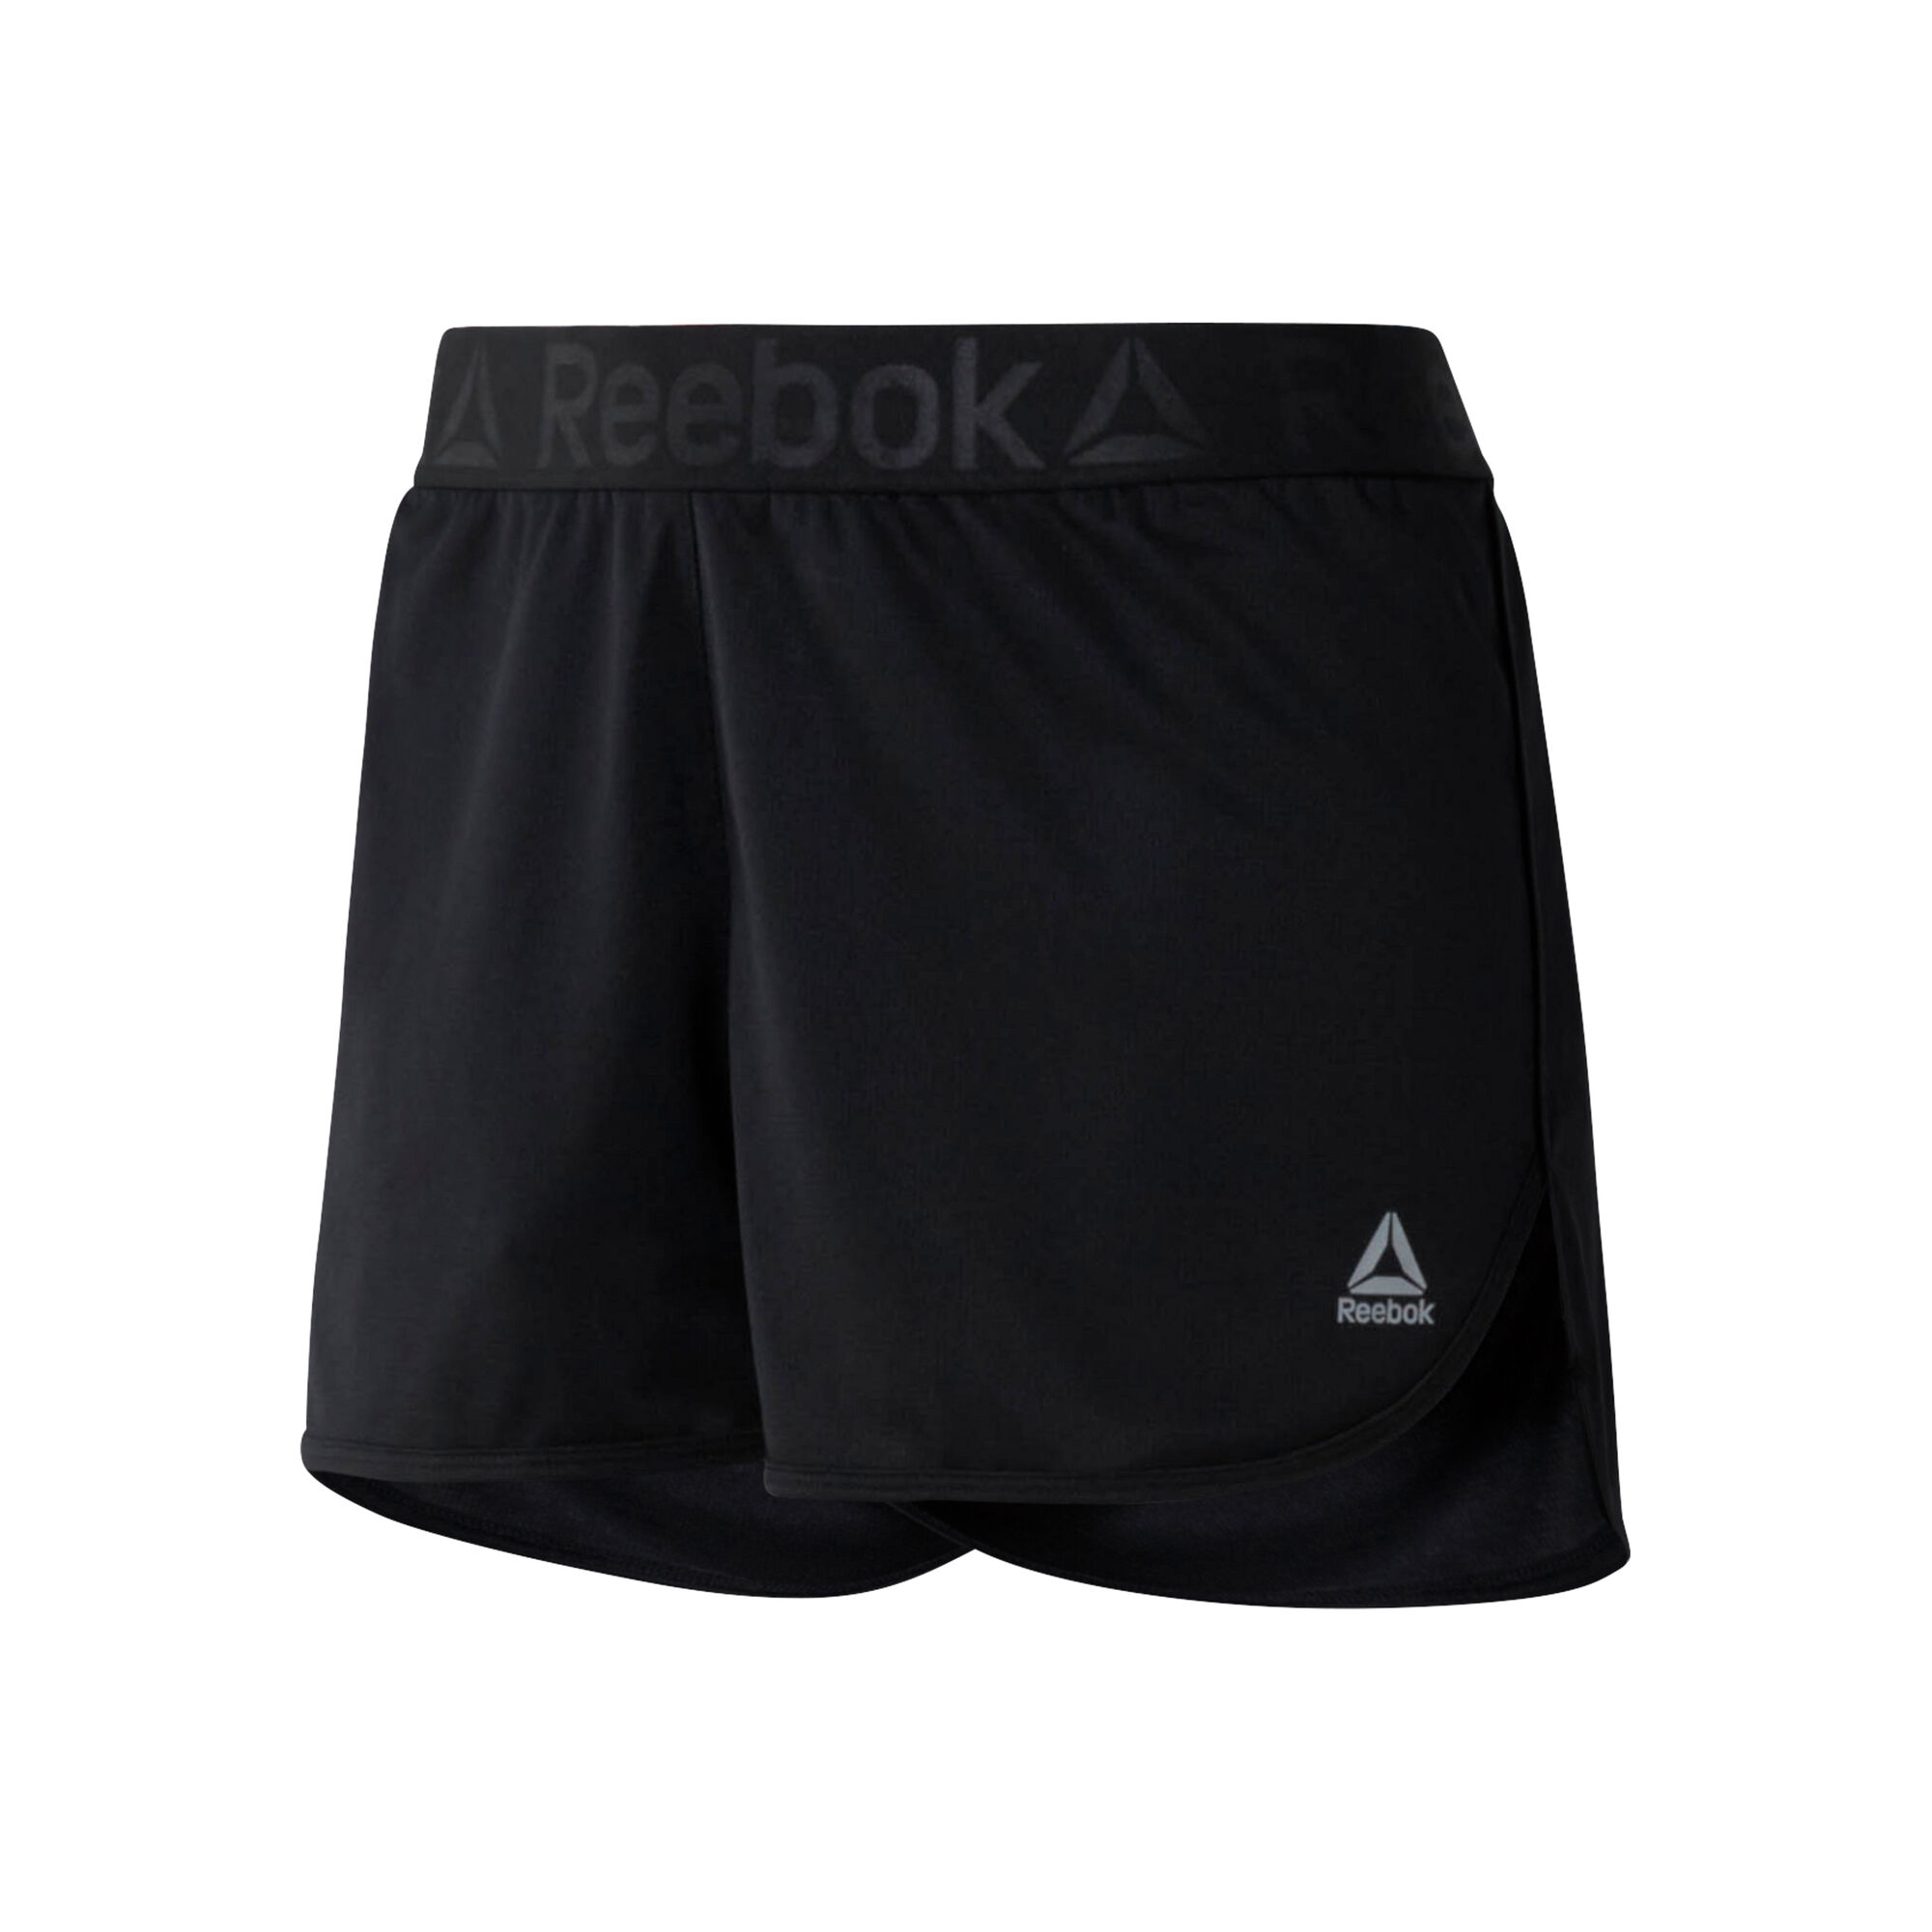 Reebok Workout Ready Shorts - Women